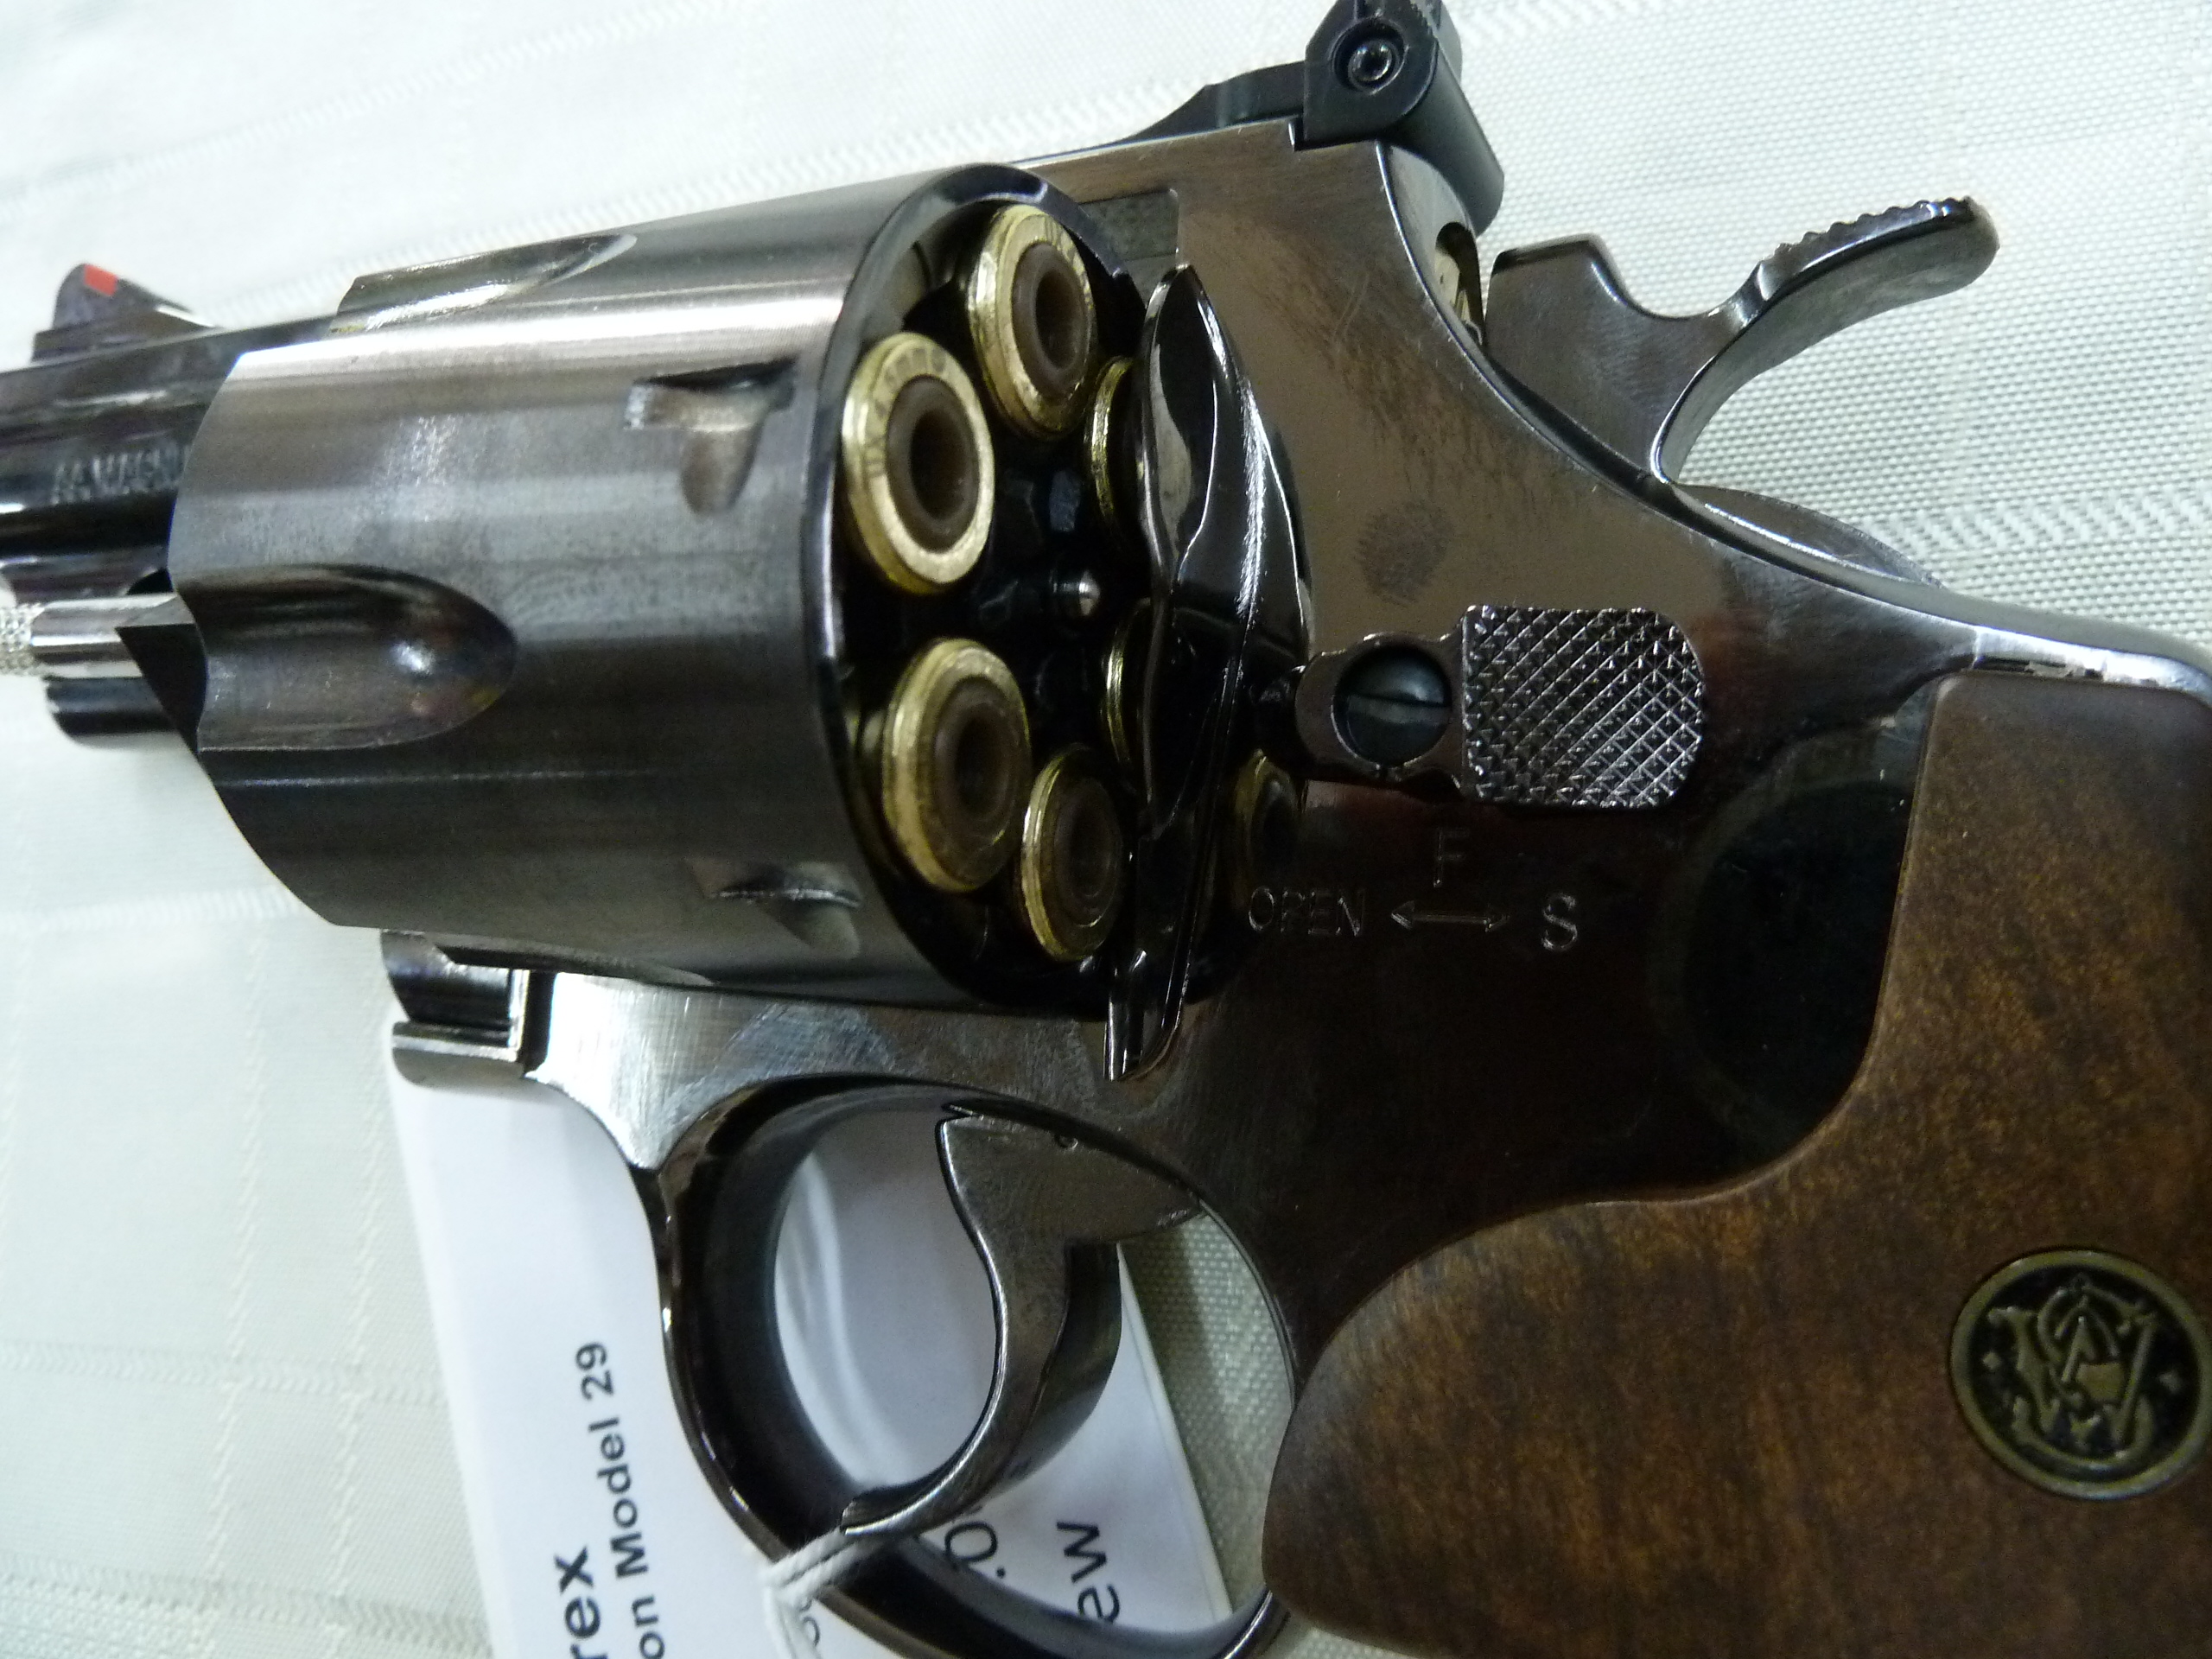 Umarex Smith & wesson Model 29 CO2 Revolver (6)